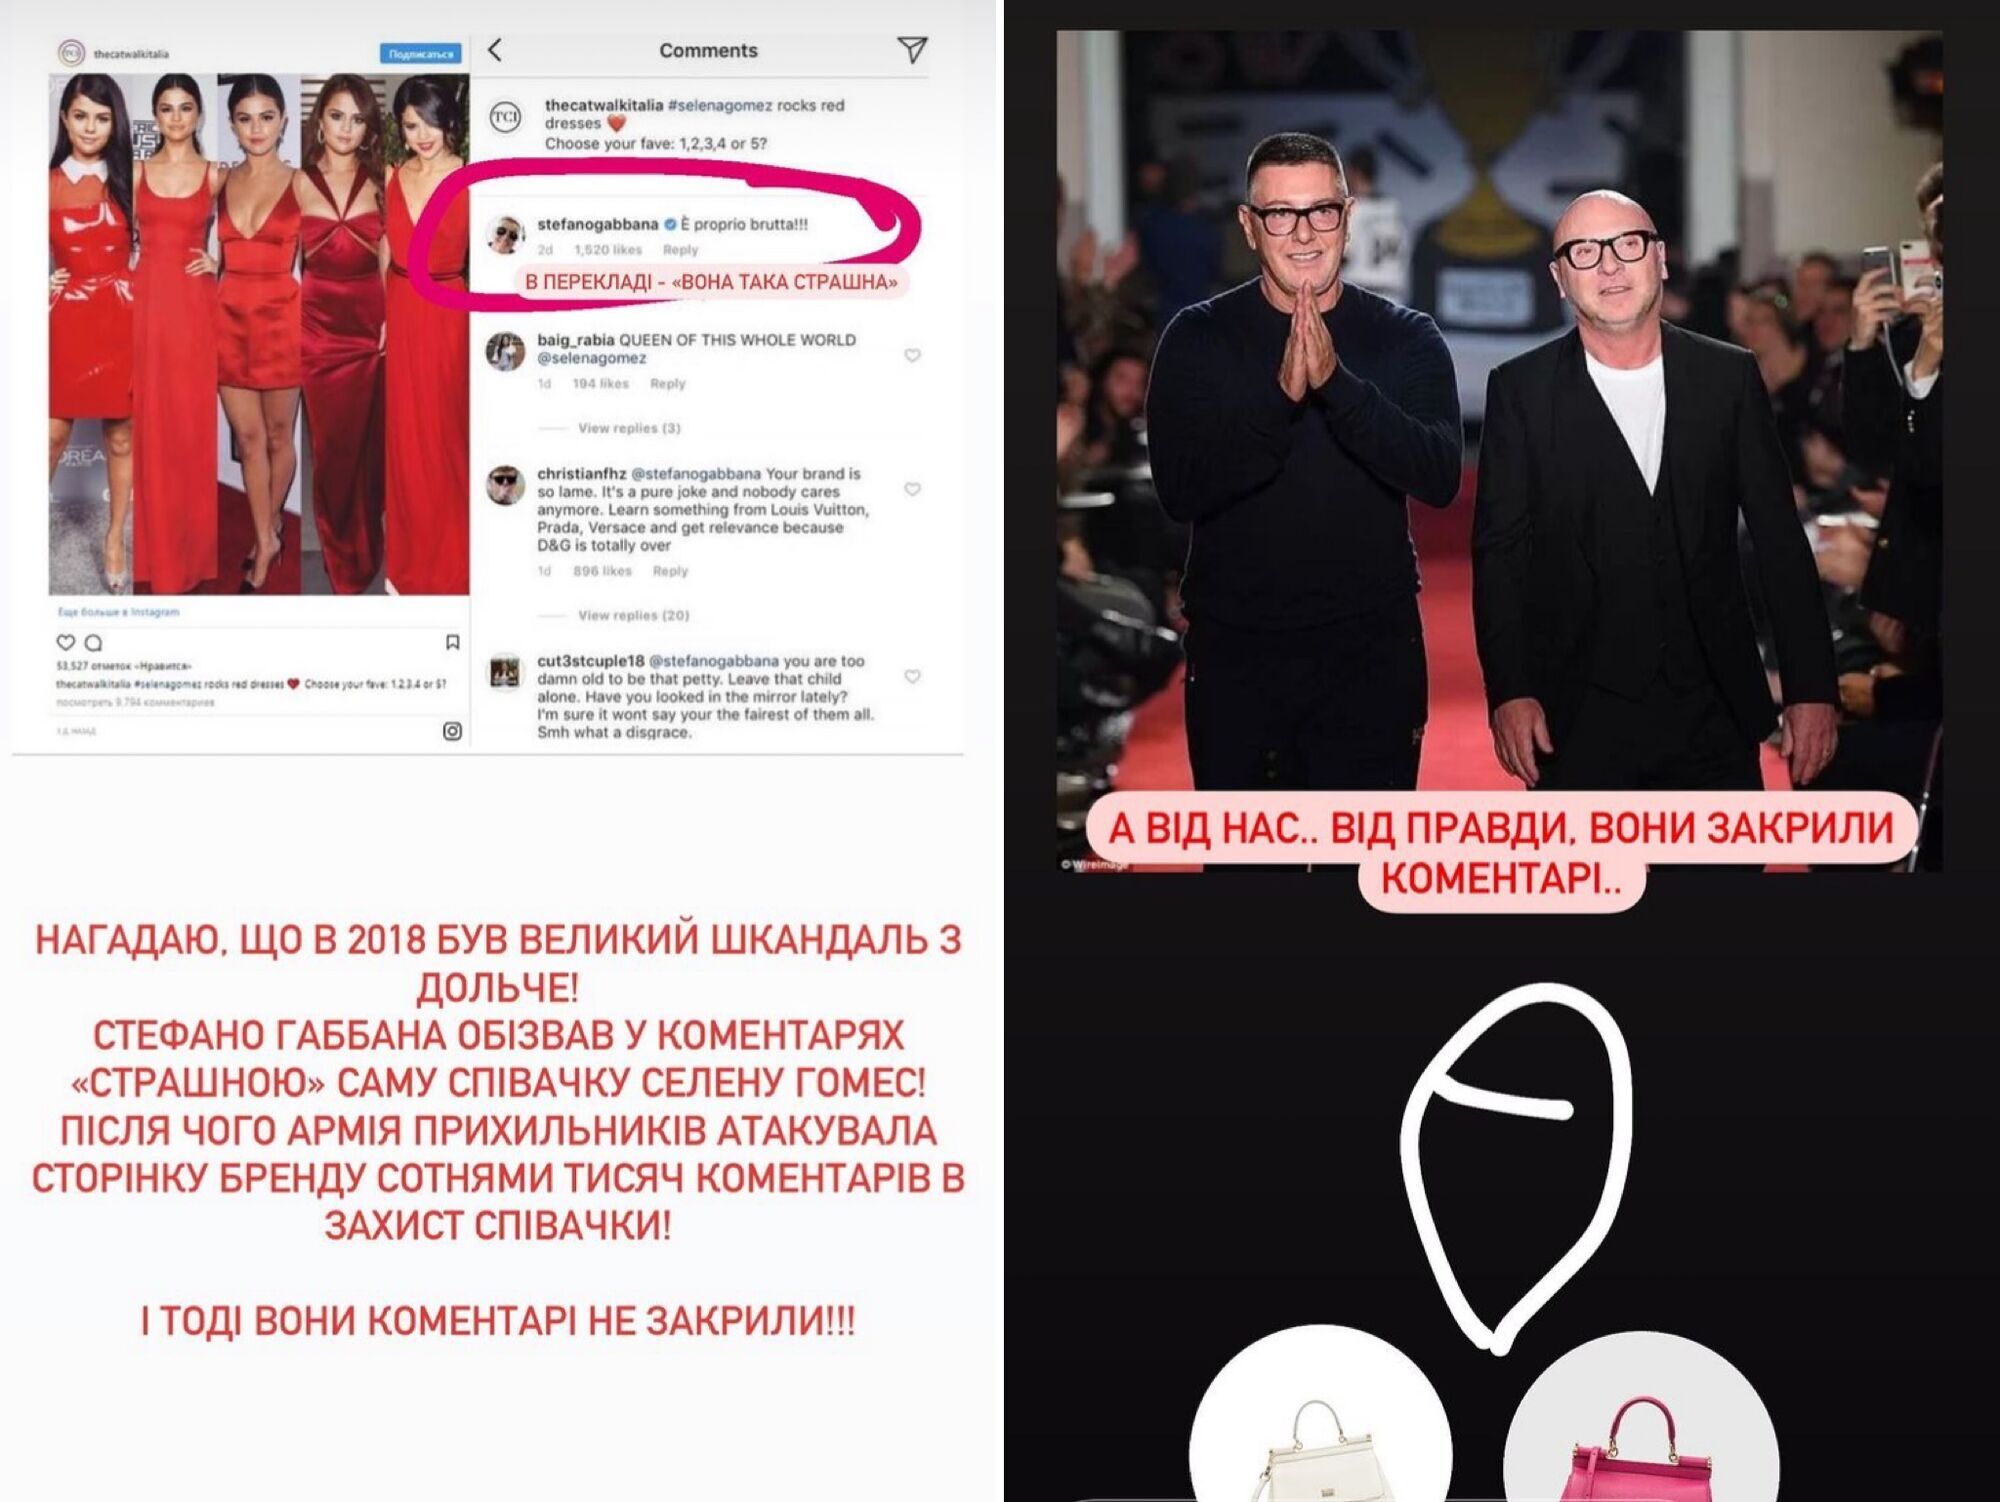 Леся Нікітюк публічно присоромила Dolce & Gabbana через Філіпа Кіркорова